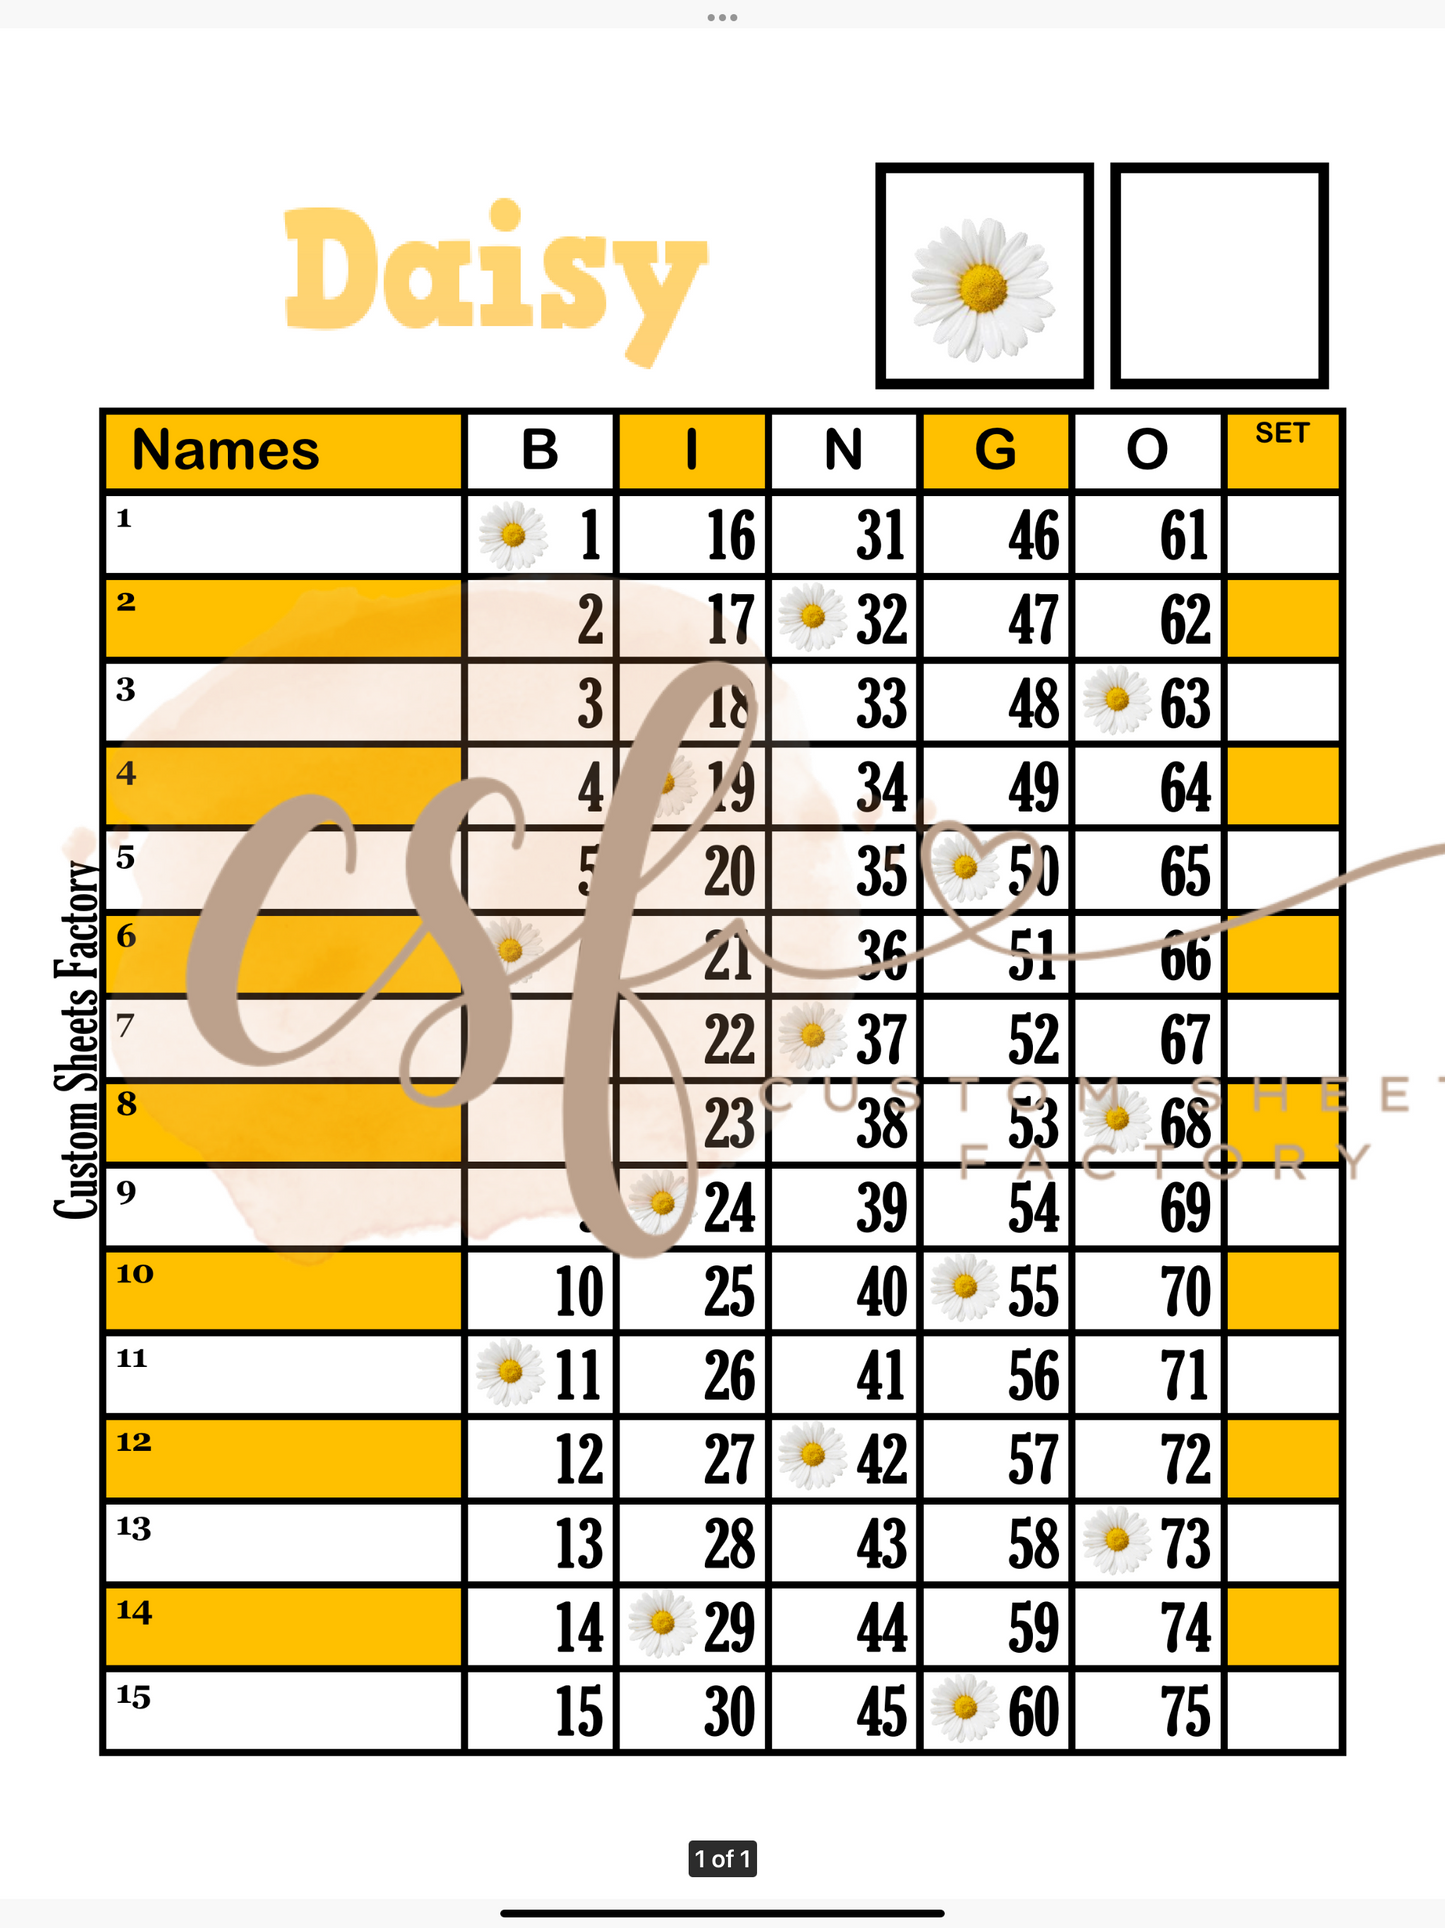 Daisy - 15 line - 75 ball